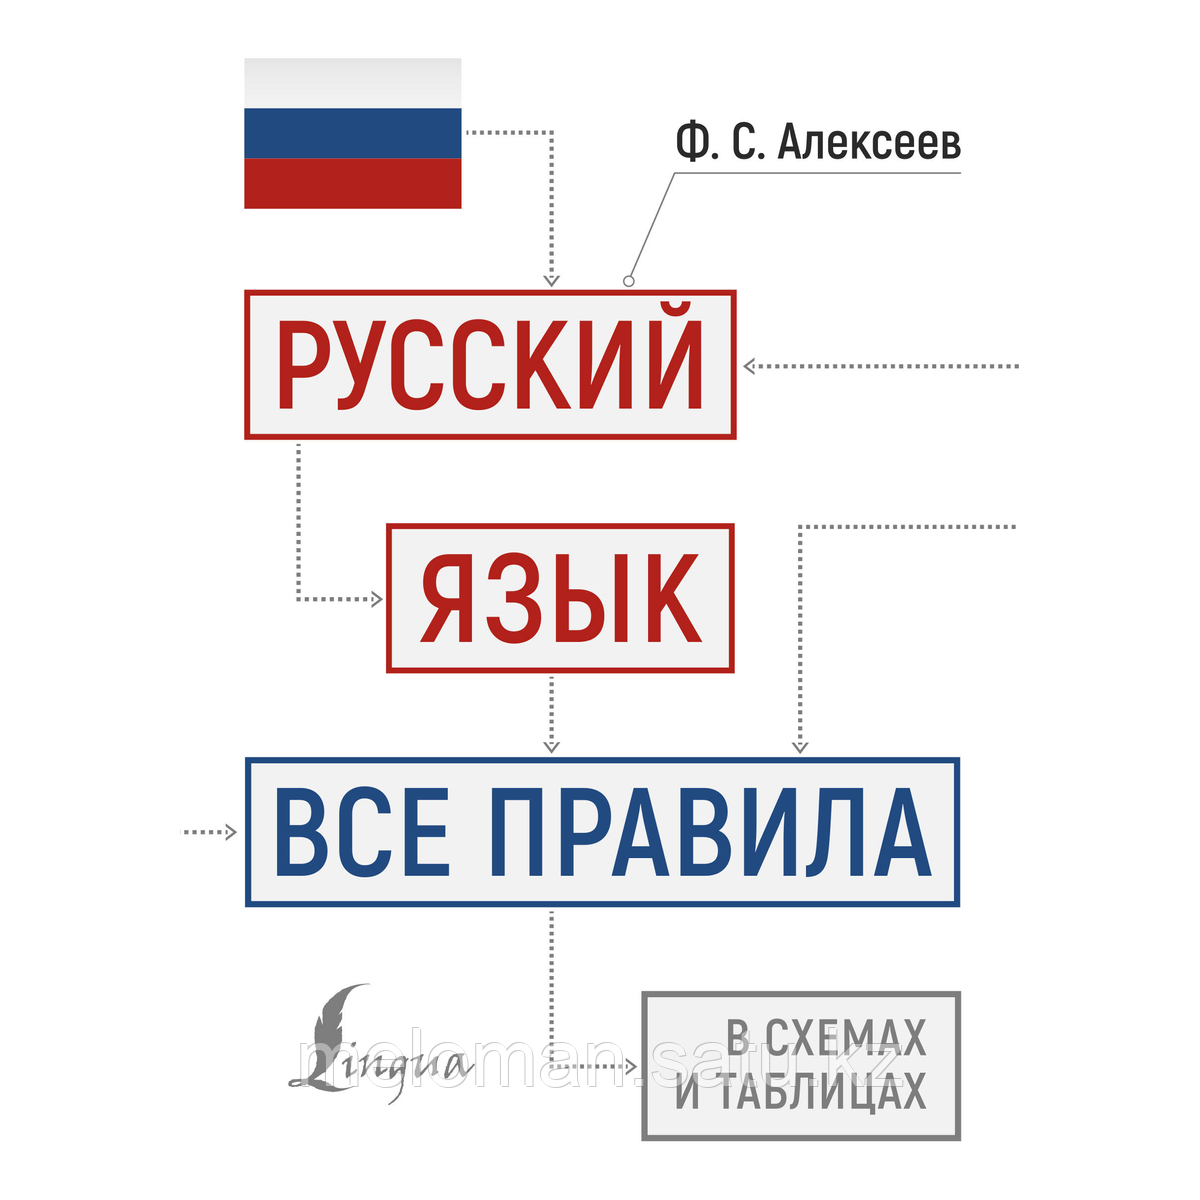 Алексеев Ф. С.: Русский язык: все правила в схемах и таблицах